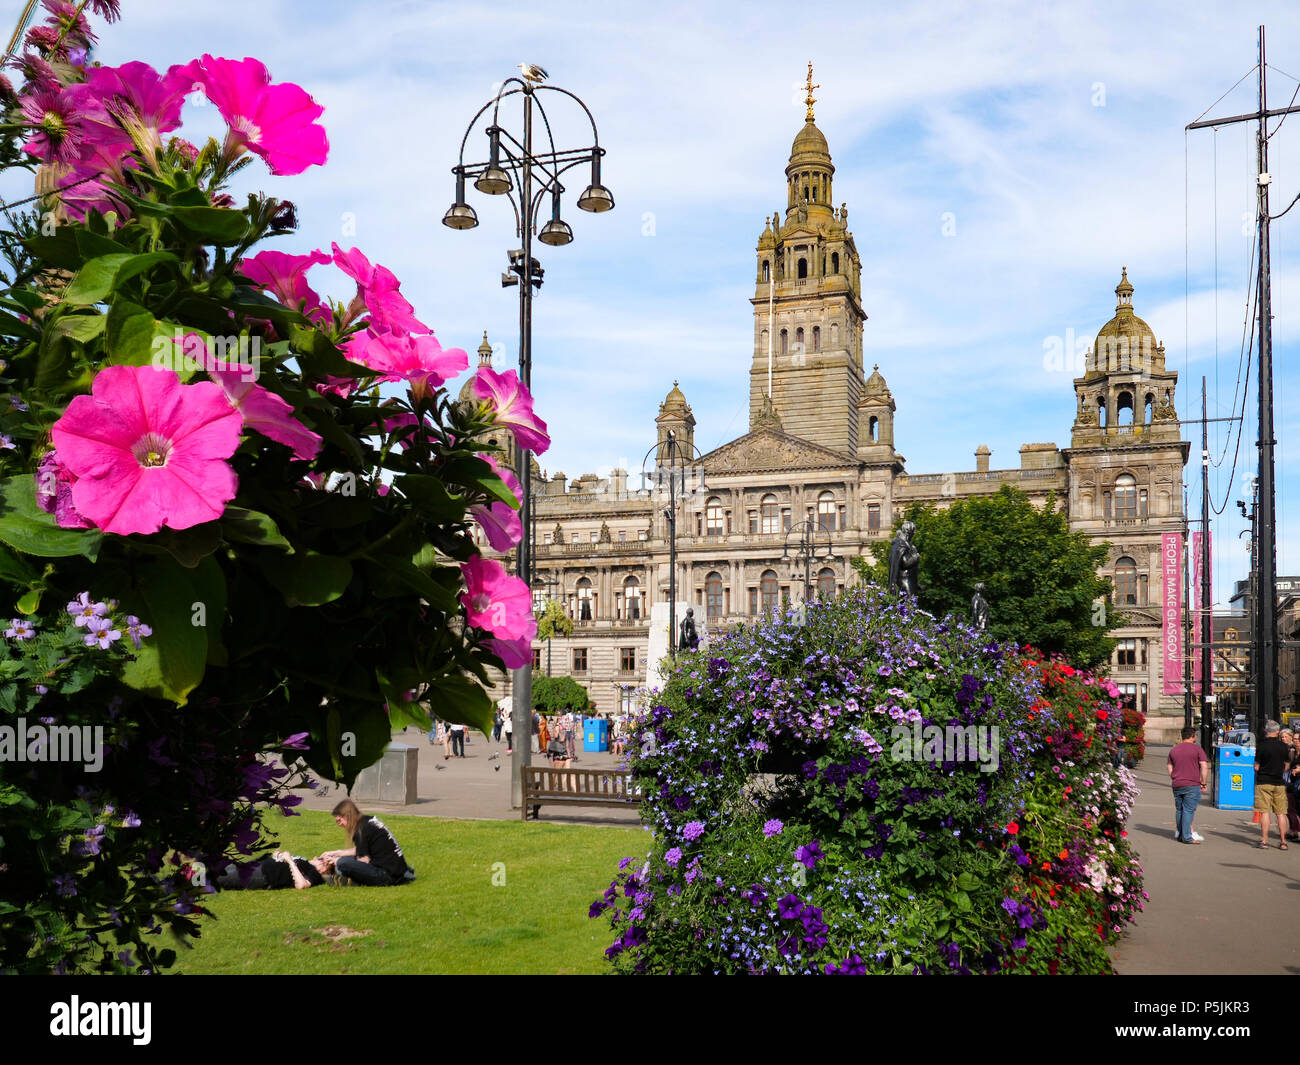 Blumen mit dem Glasgow City Chambers, George Square, Glasgow, Schottland, Vereinigtes Königreich Stockfoto